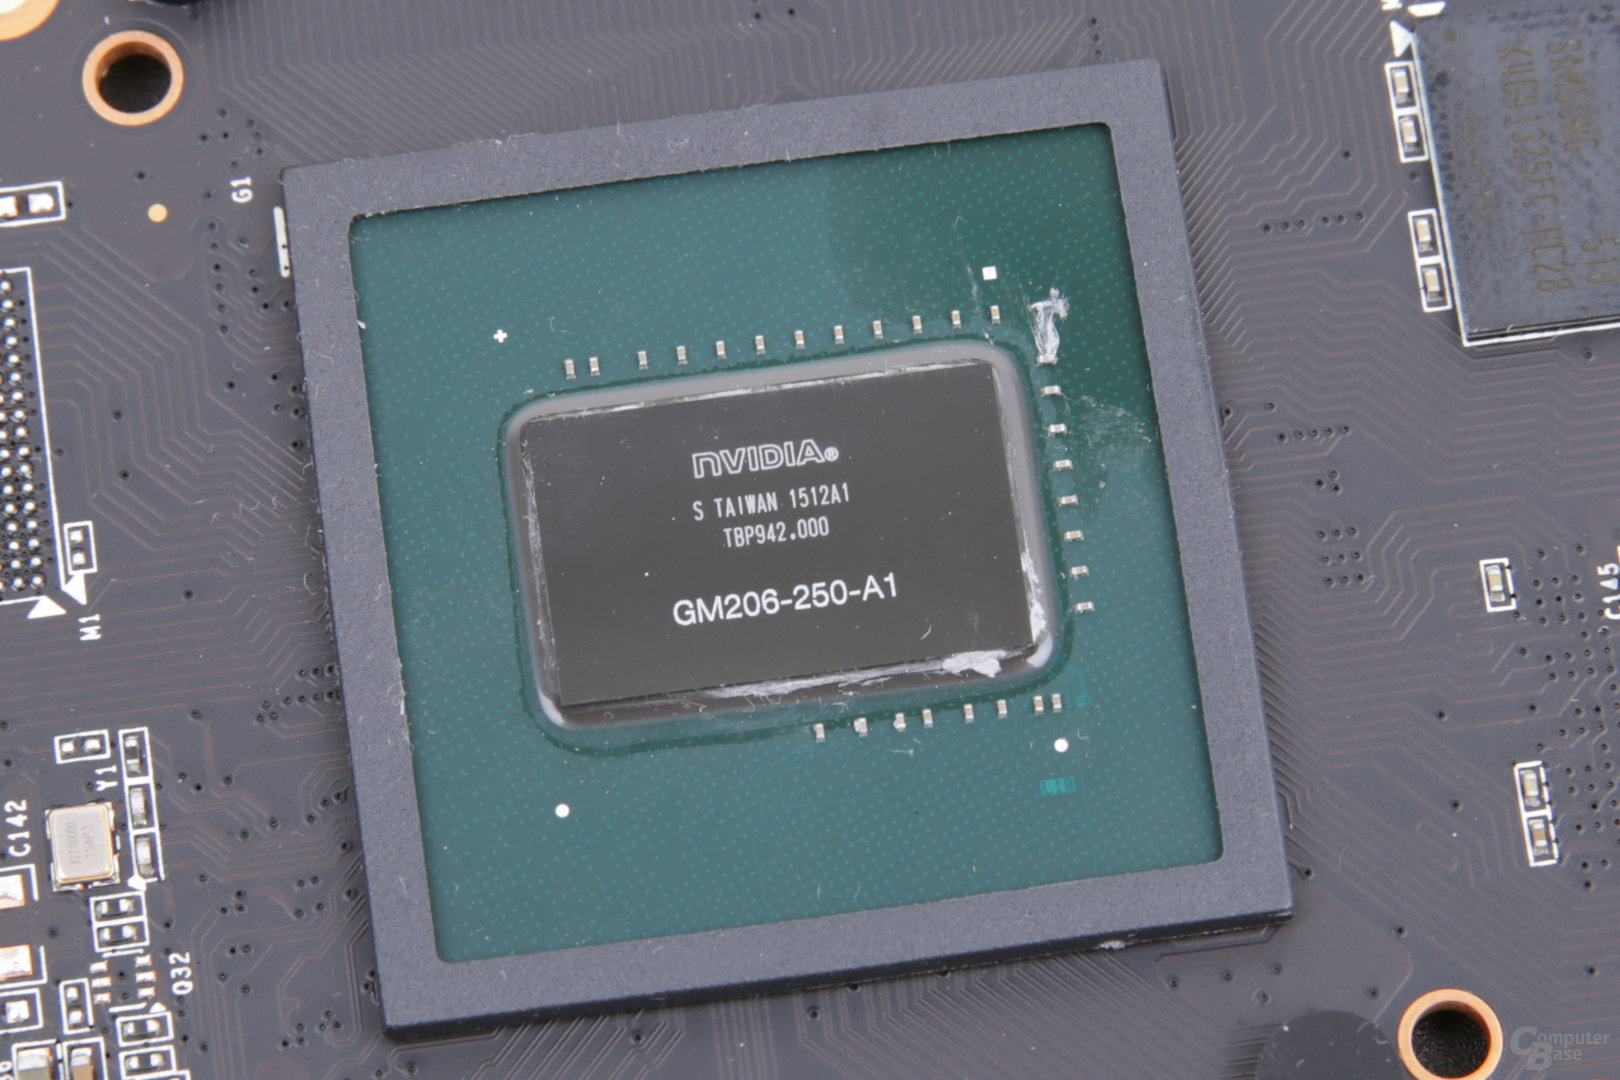 GM206-GPU